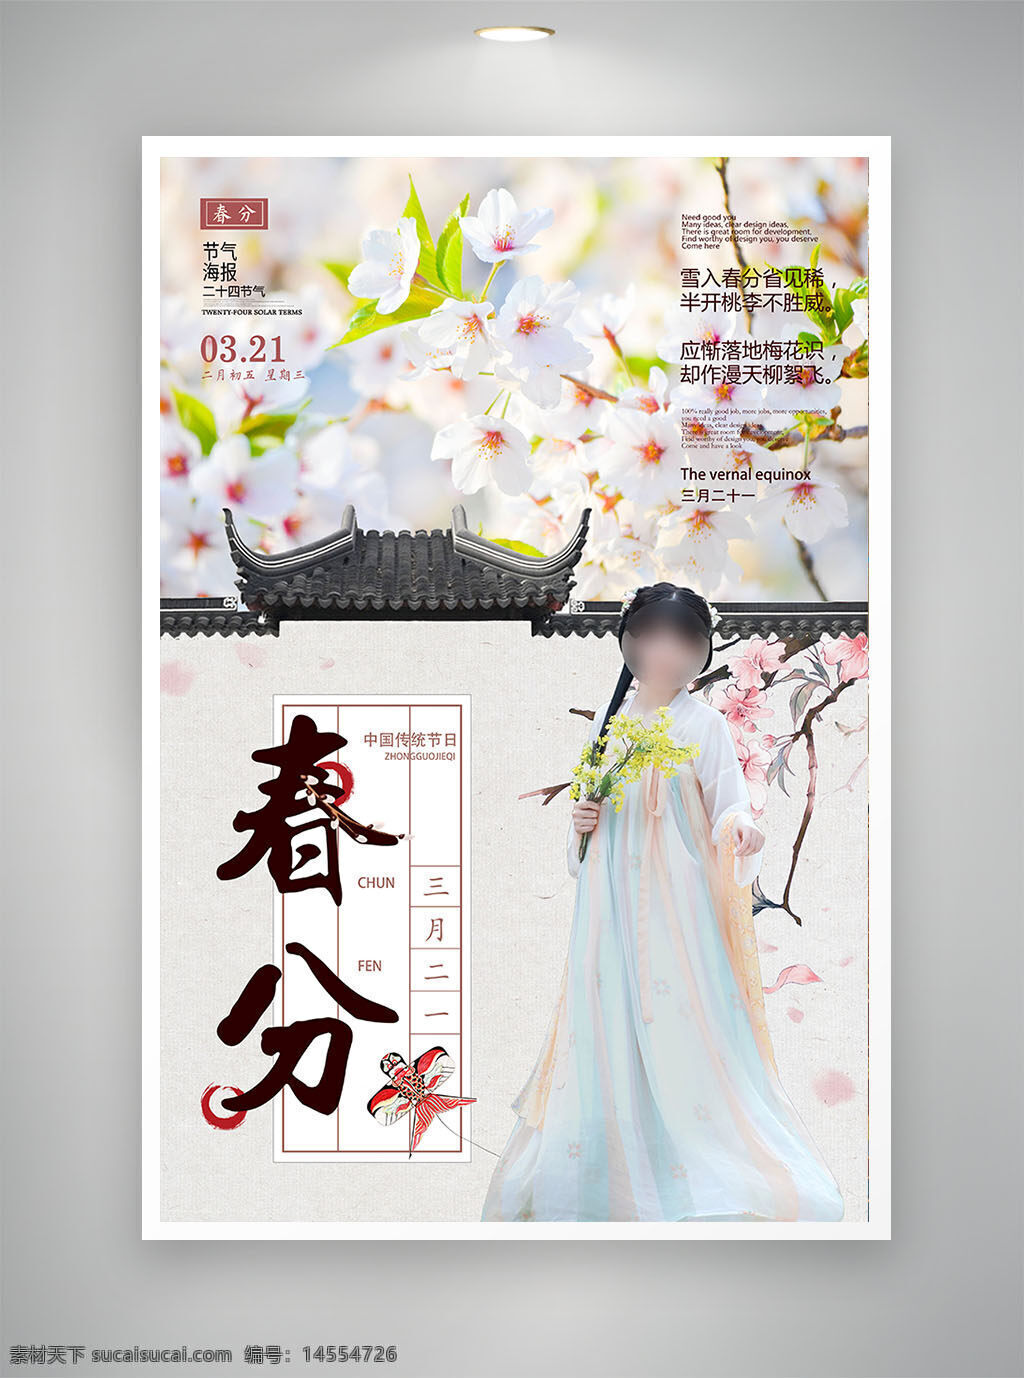 中国风海报 古风海报 促销海报 节日海报 春风海报